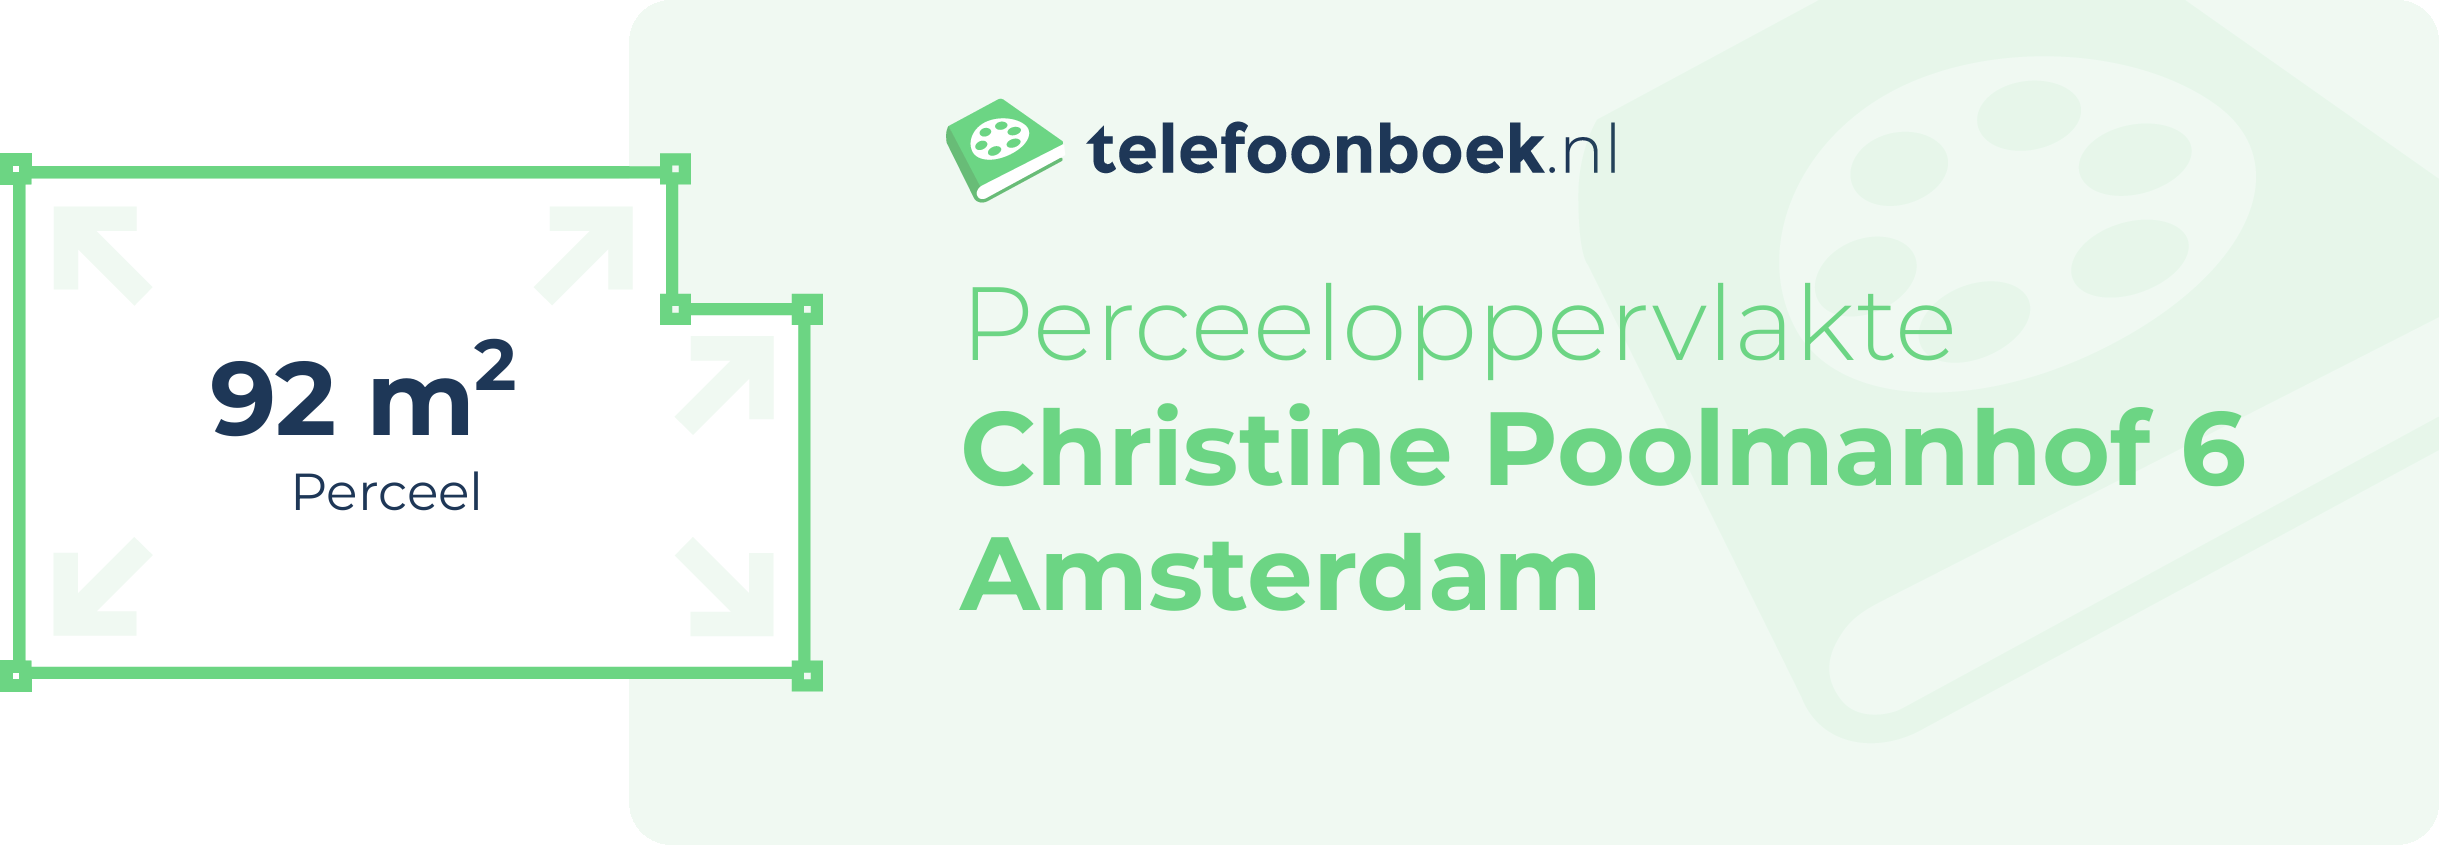 Perceeloppervlakte Christine Poolmanhof 6 Amsterdam